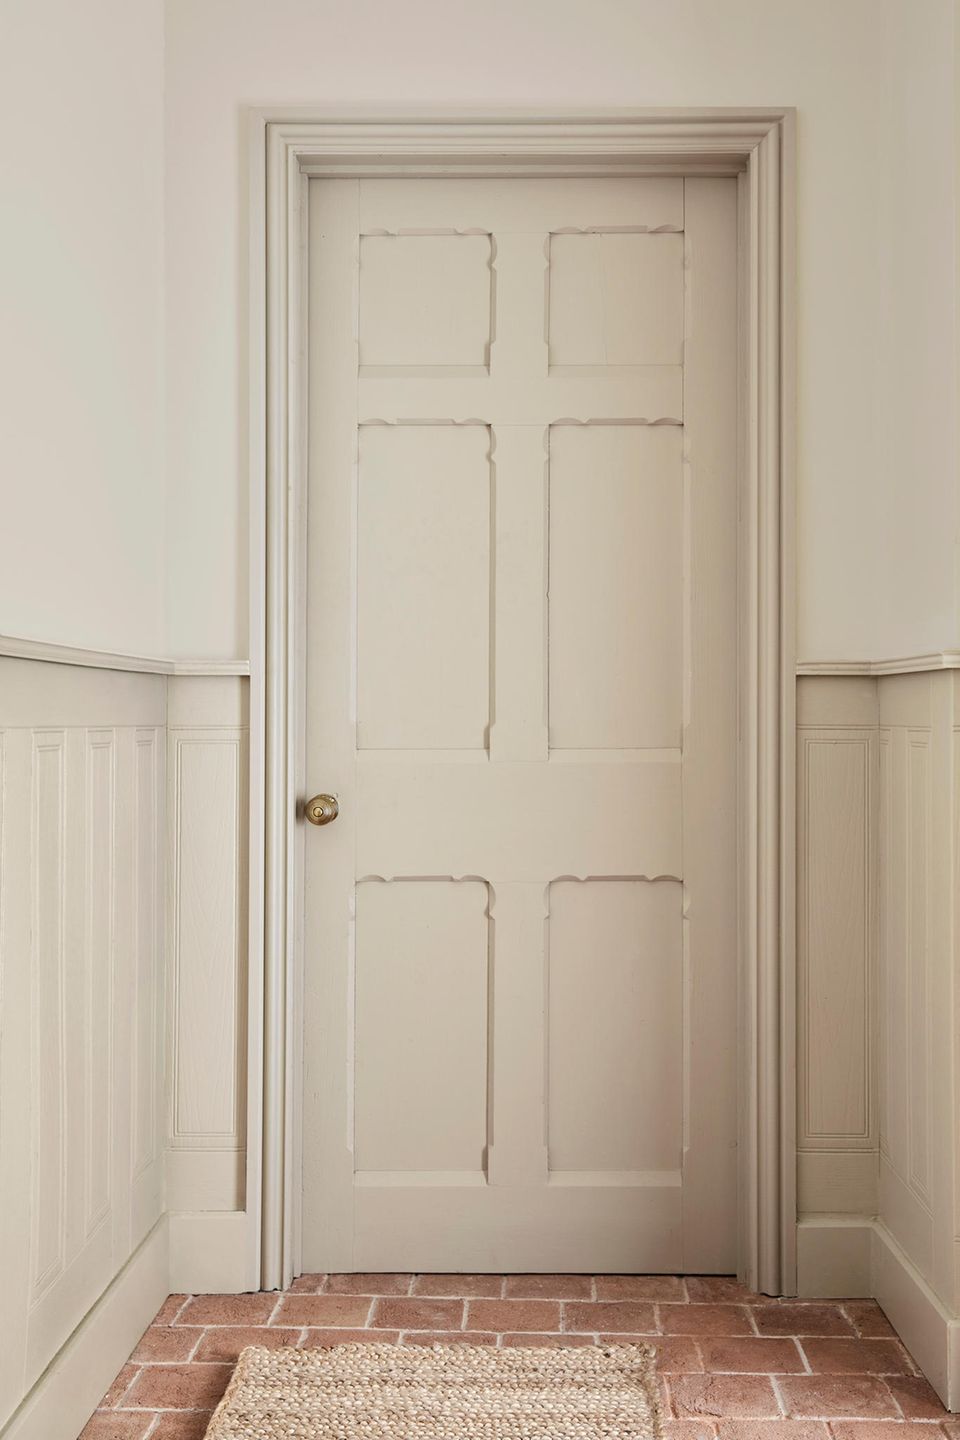 Tür und Türrahmen in hellem Beige mit Deko-Kassetten am Ende eines weißen Flures